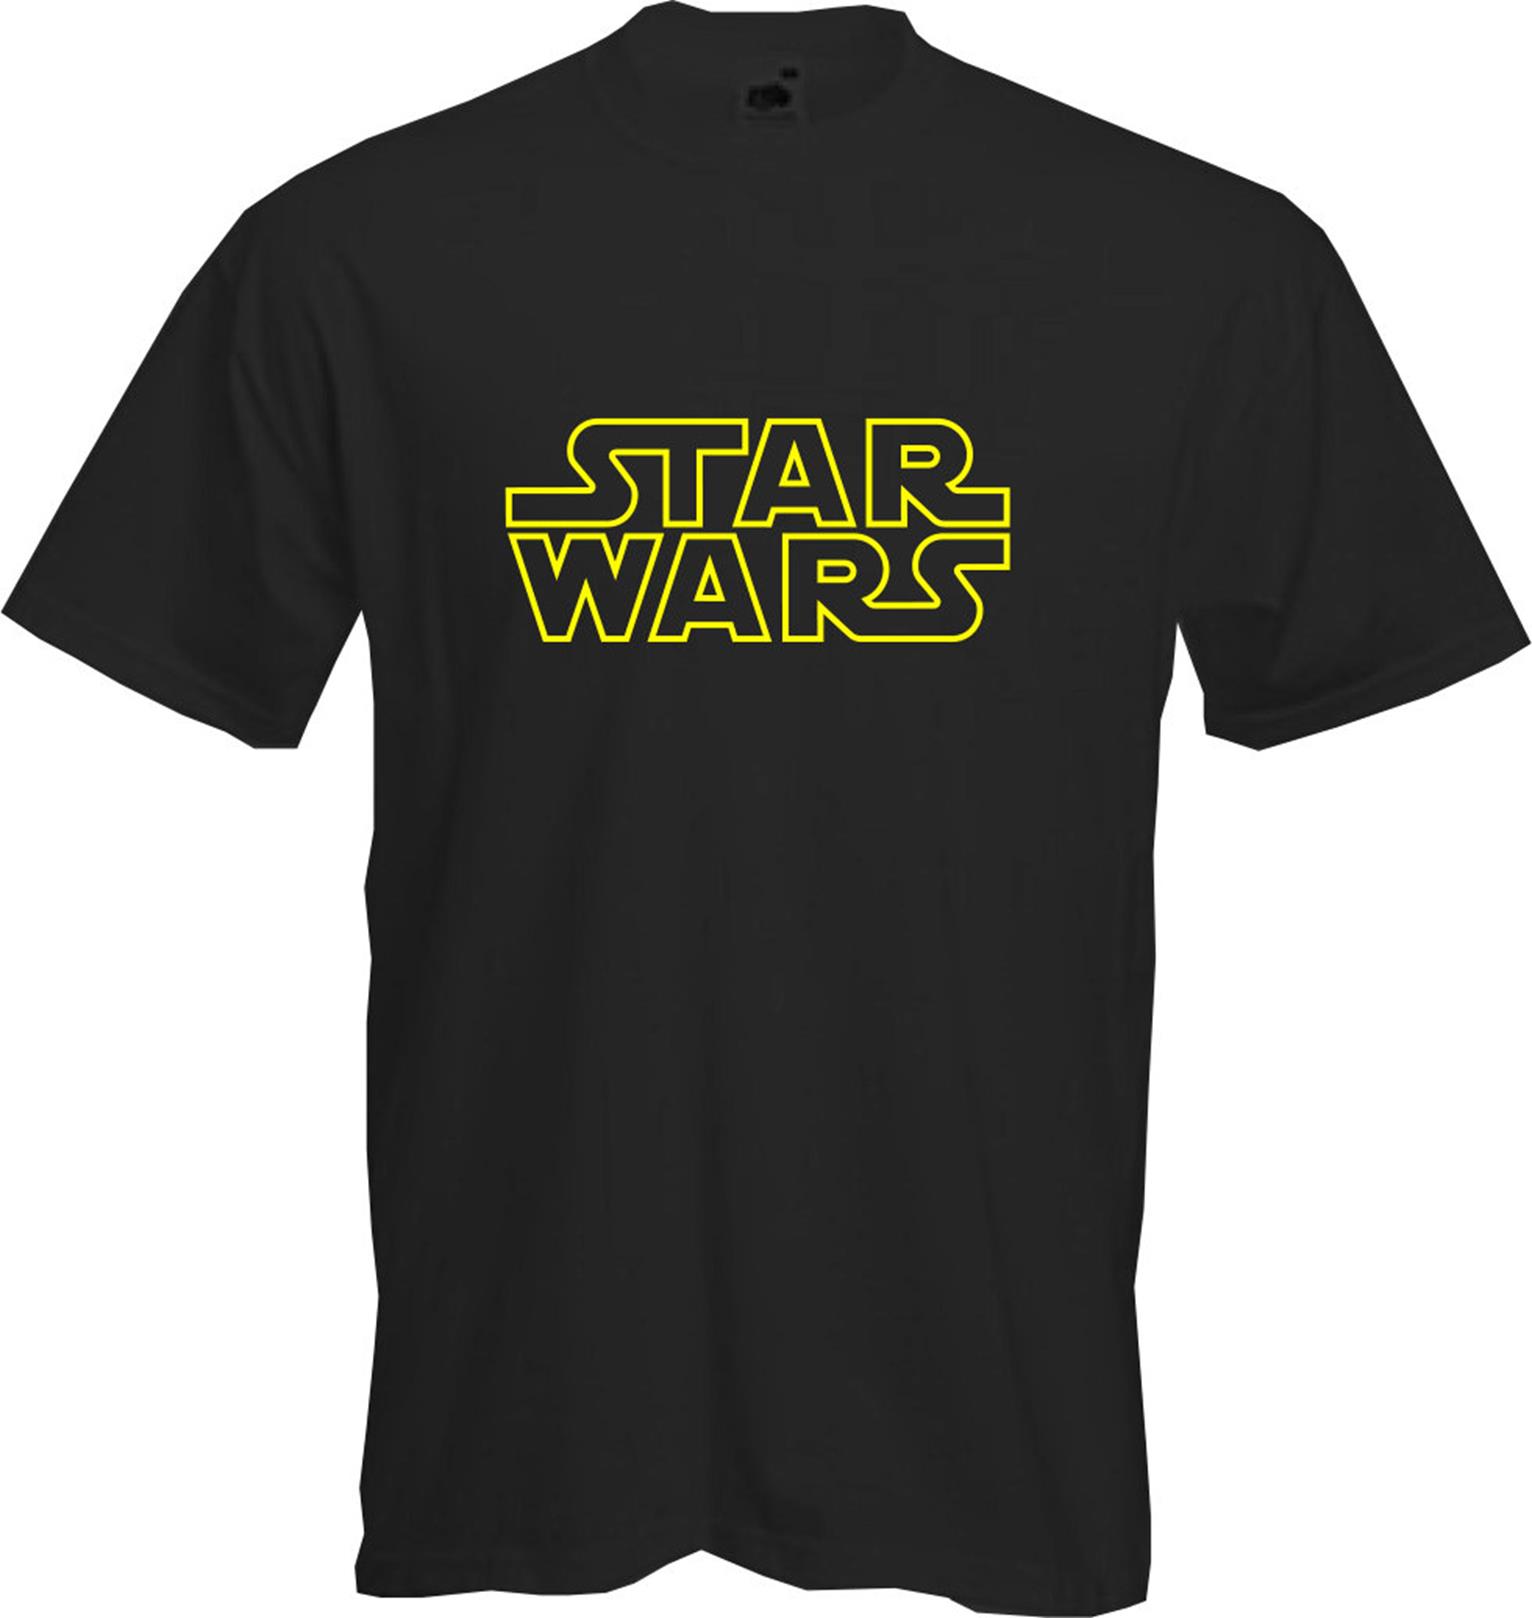 STAR WARS CLASSIC - T Shirt, Retro, Gold Logo, Sheldon, Fun, Cool